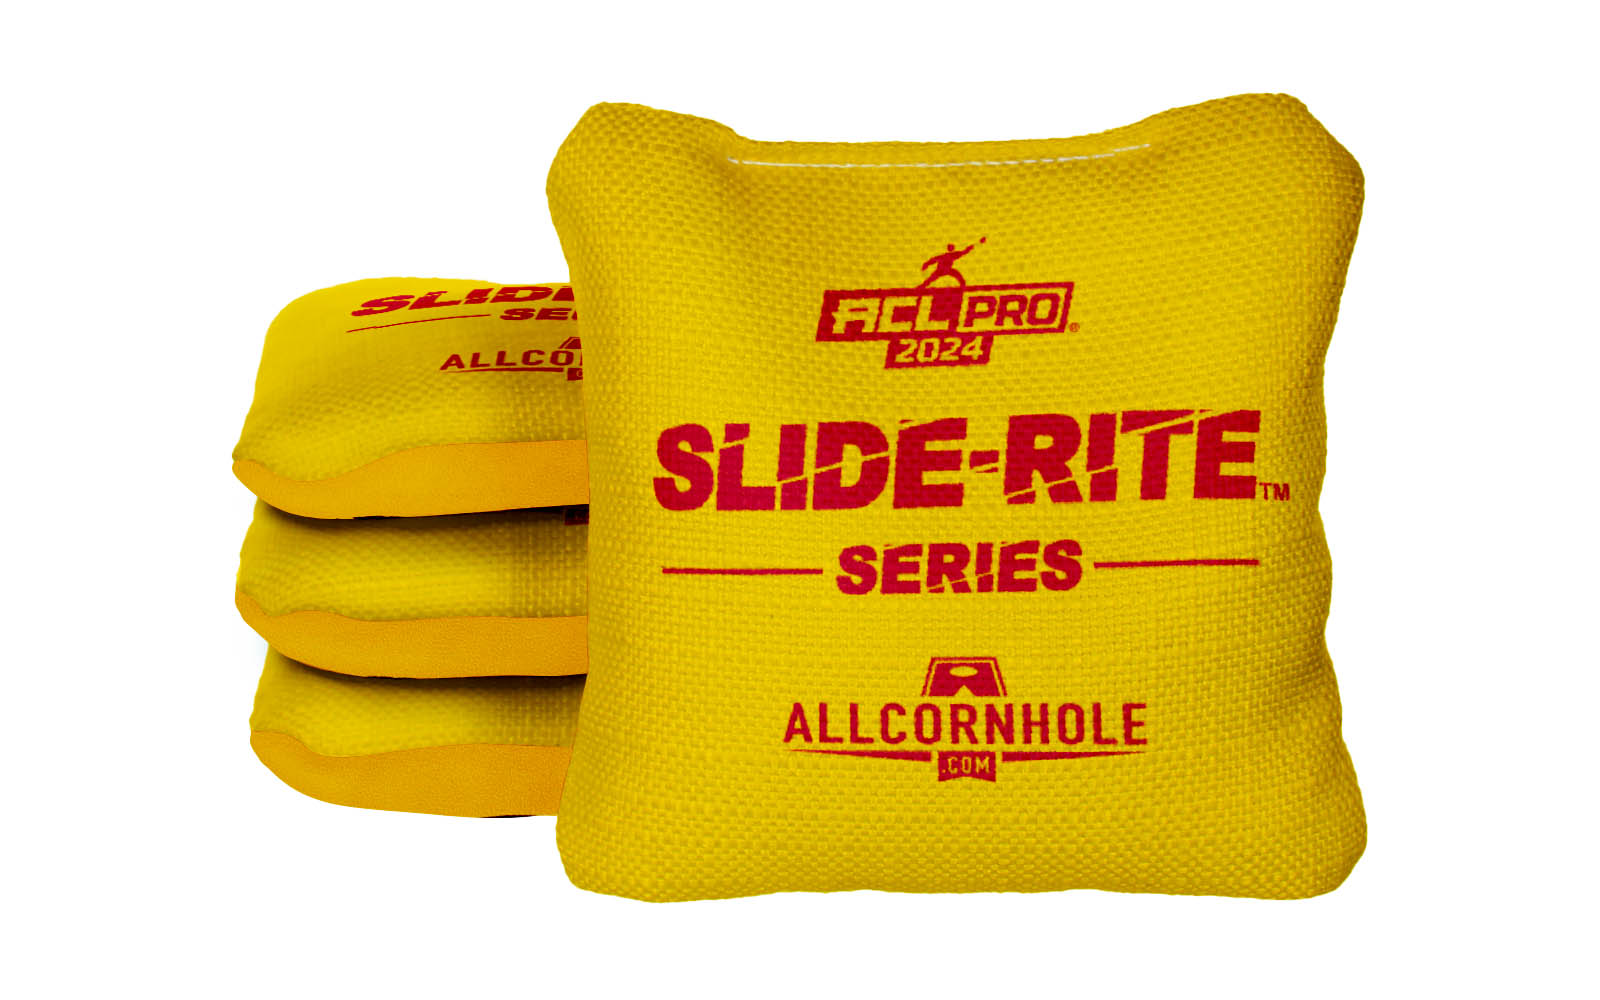 Officially Licensed Collegiate Cornhole Bags - AllCornhole Slide Rite - Set of 4 - University of Maryland